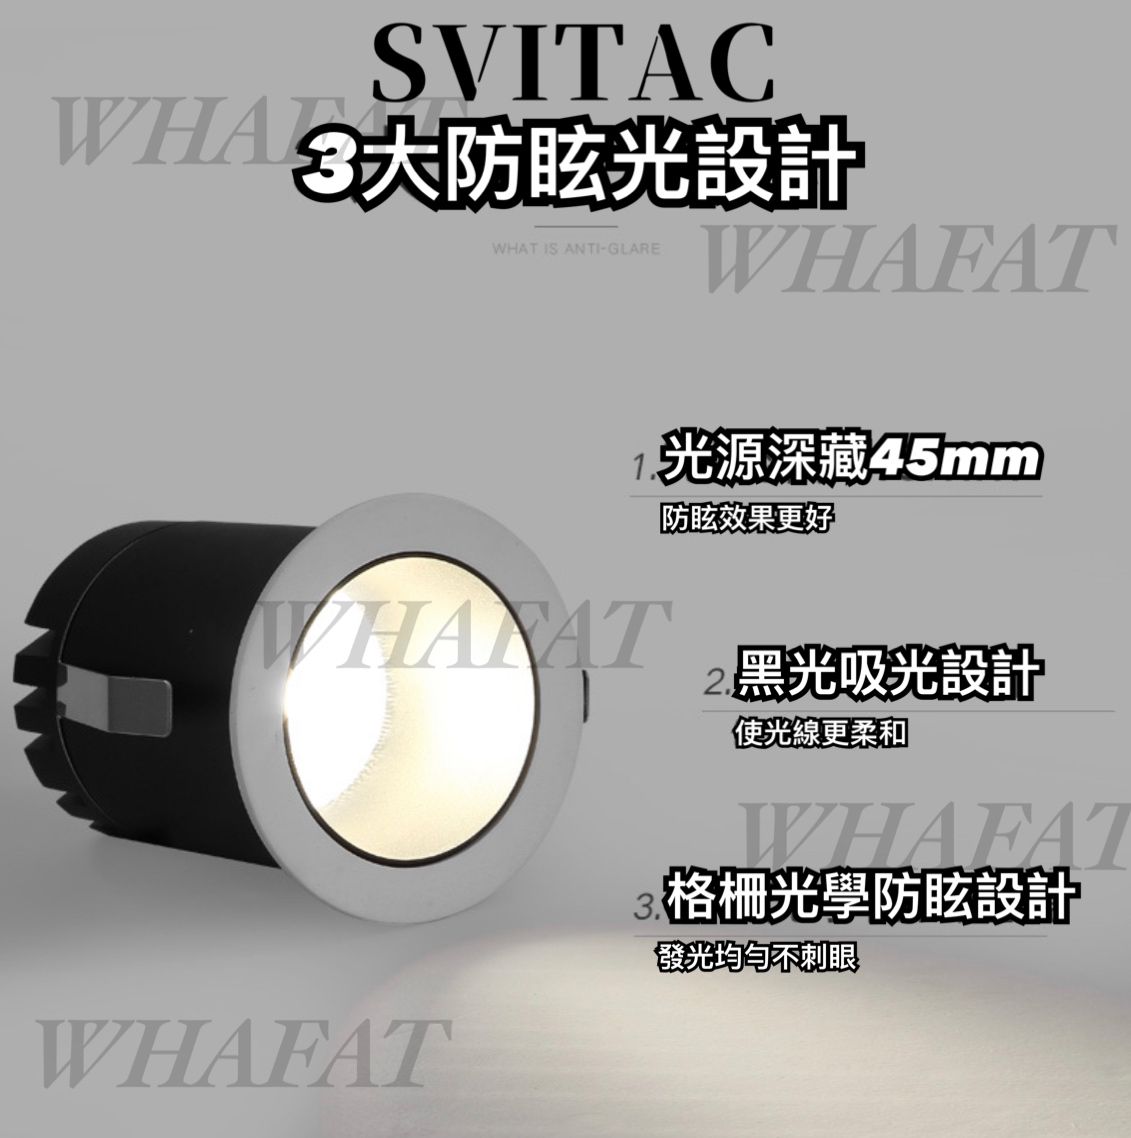 智能家居-Svitac-220v智能雙色筒燈